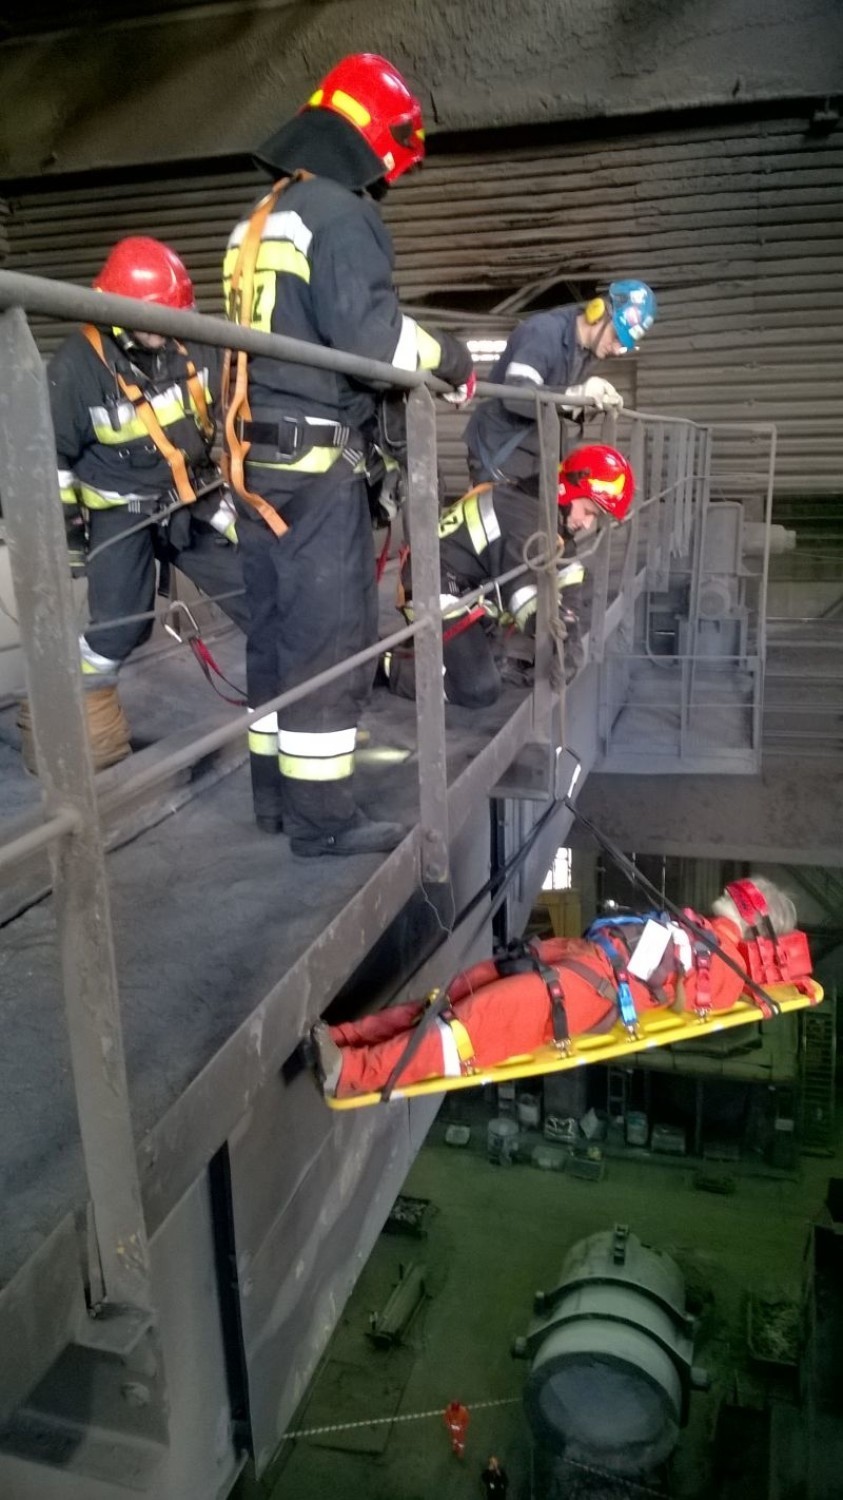 Ćwiczenia strażackie na terenie ostrowieckiej huty